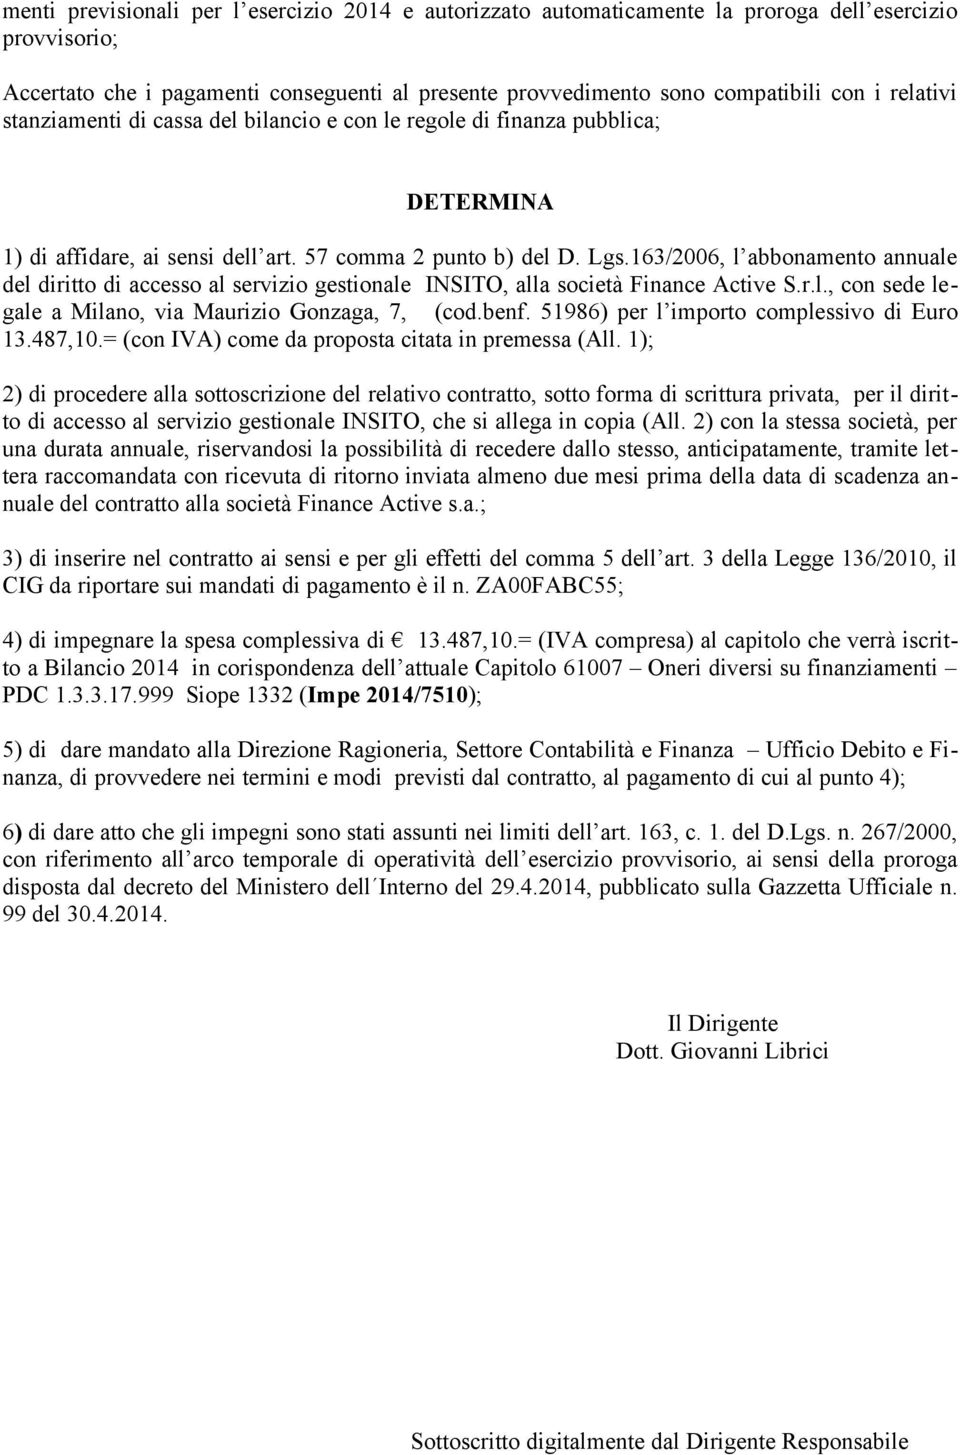 163/2006, l abbonamento annuale del diritto di accesso al servizio gestionale INSITO, alla società Finance Active S.r.l., con sede legale a Milano, via Maurizio Gonzaga, 7, (cod.benf.